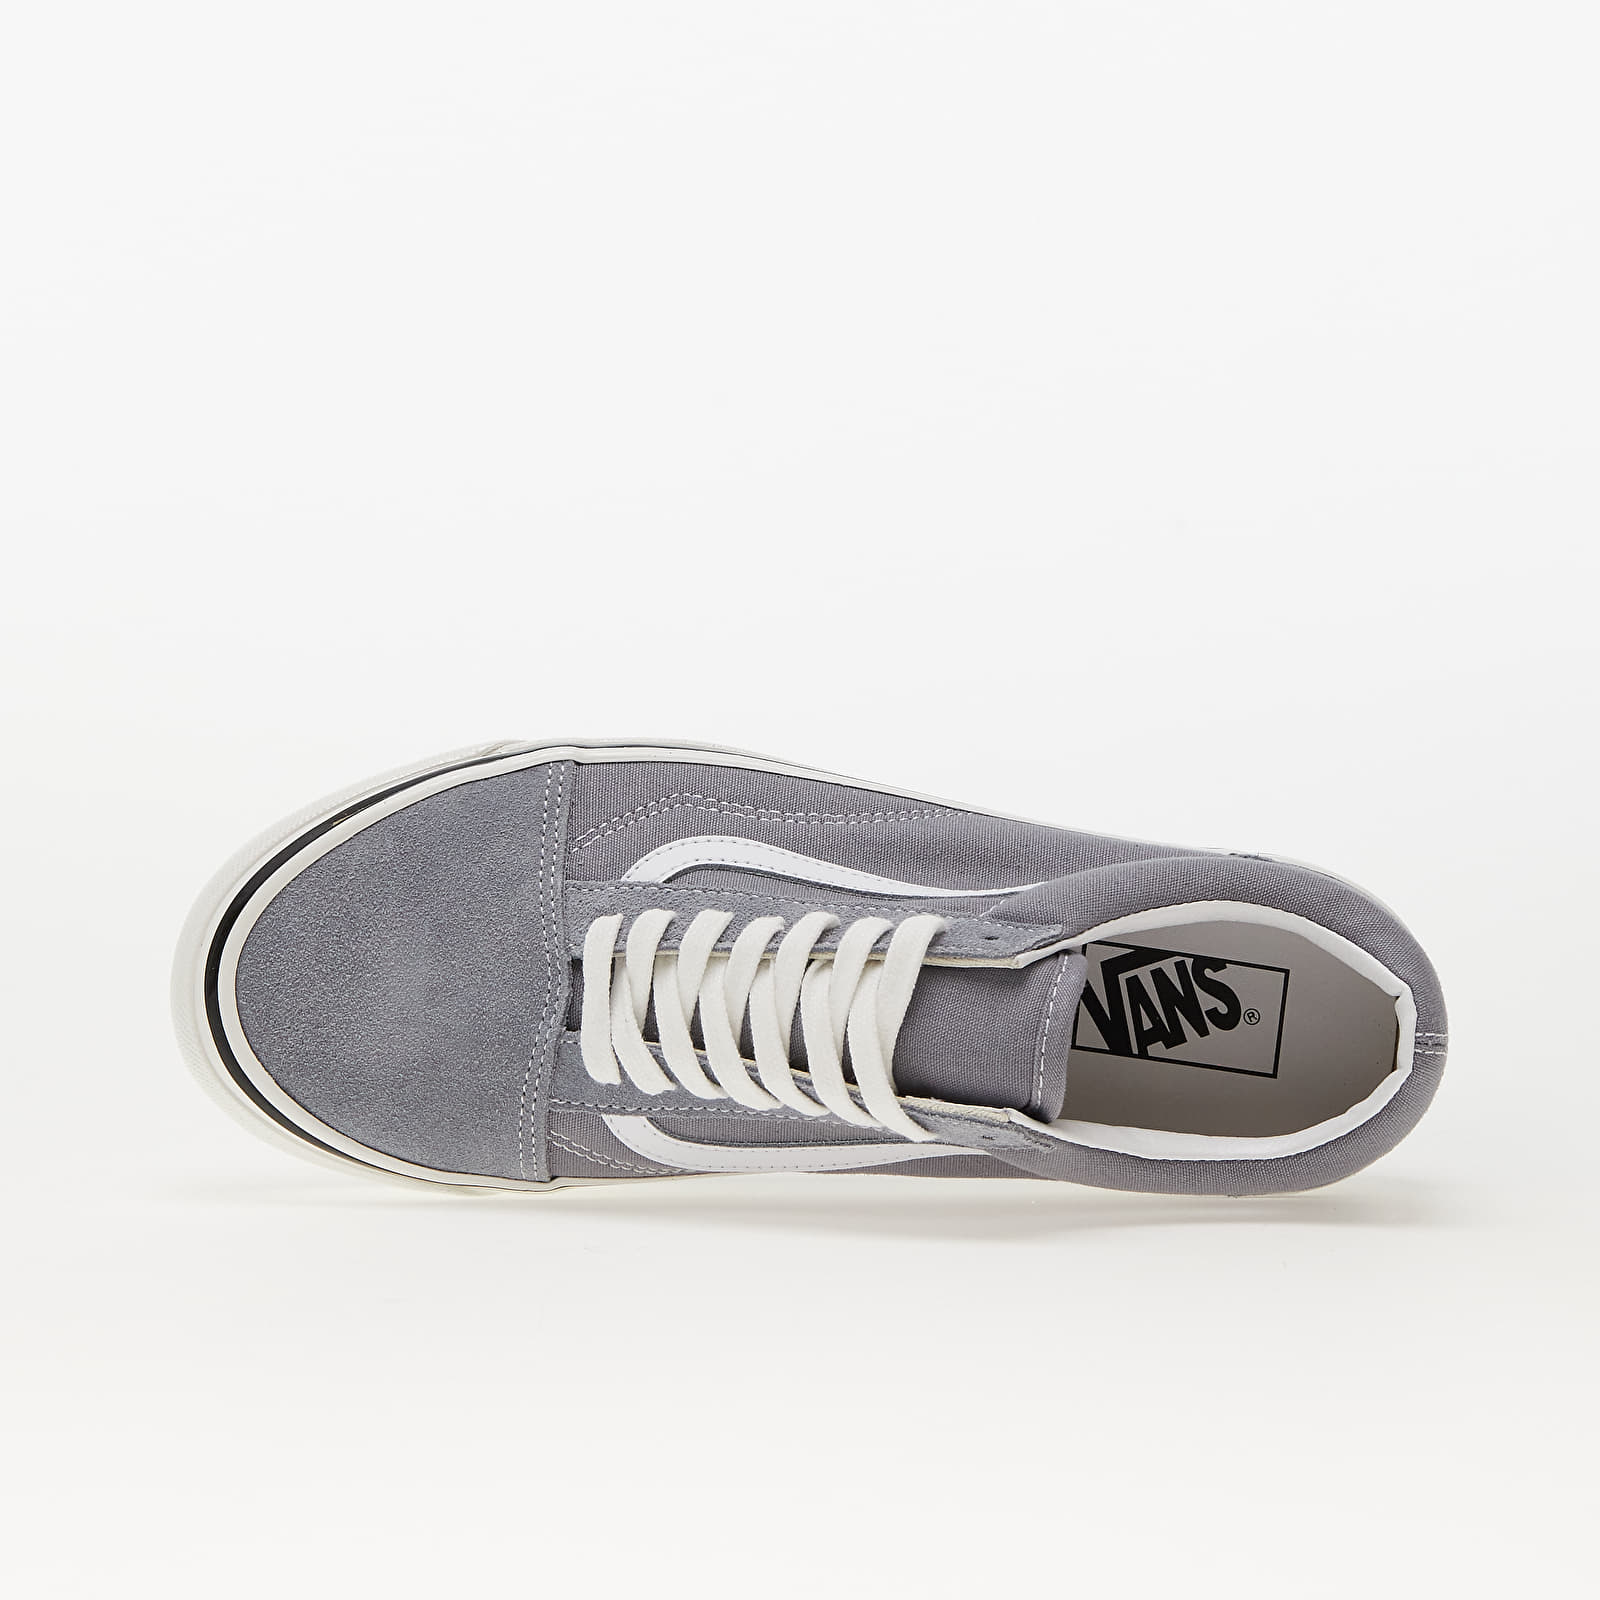 Men's shoes Vans Old Skool 36 DX Tradewinds | Footshop